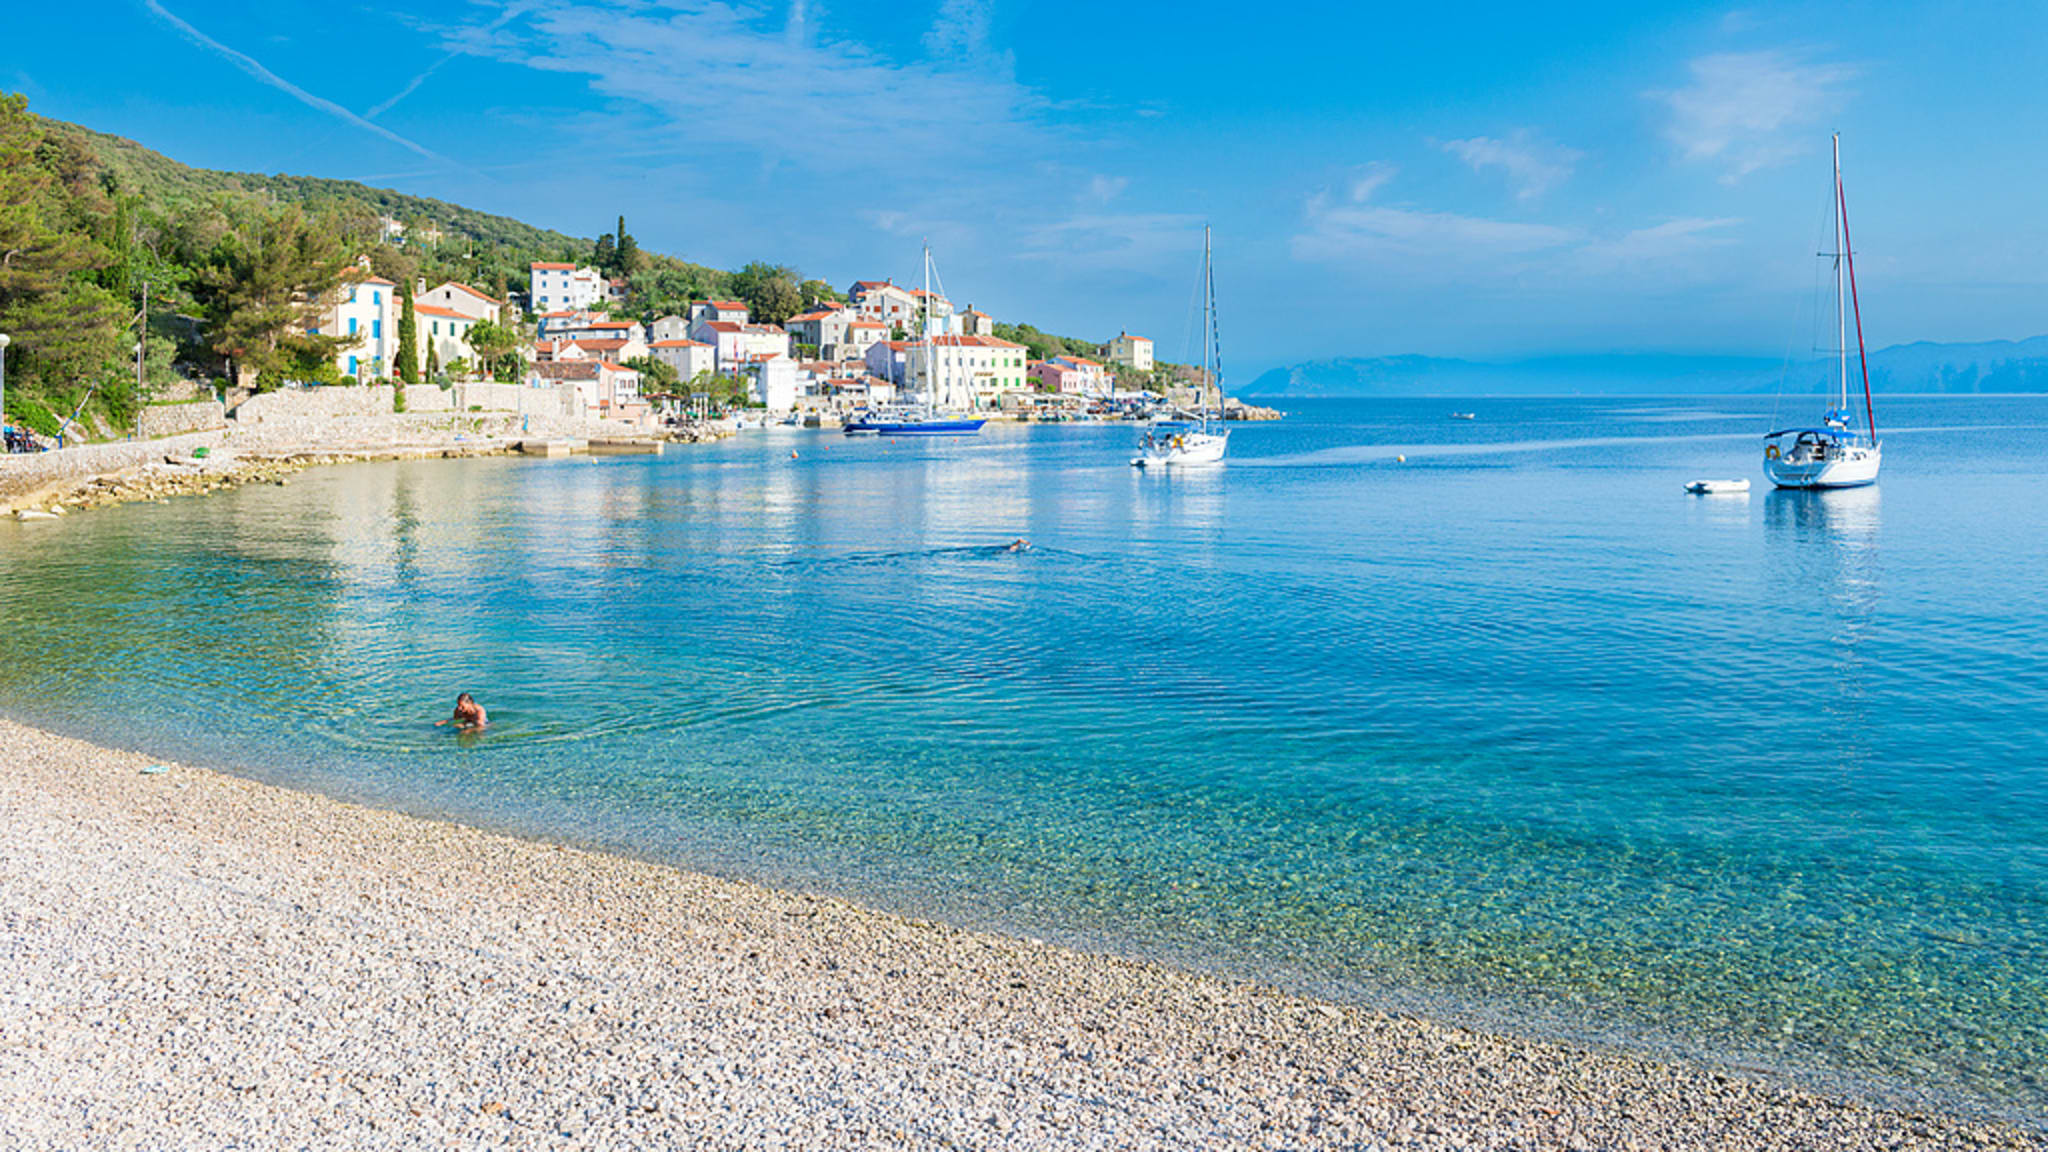 Der Strand von Zdovica, Valun, Insel Cres, Kvarner Bucht, Kroatien ©Franco Cogoli/HUBER IMAGES